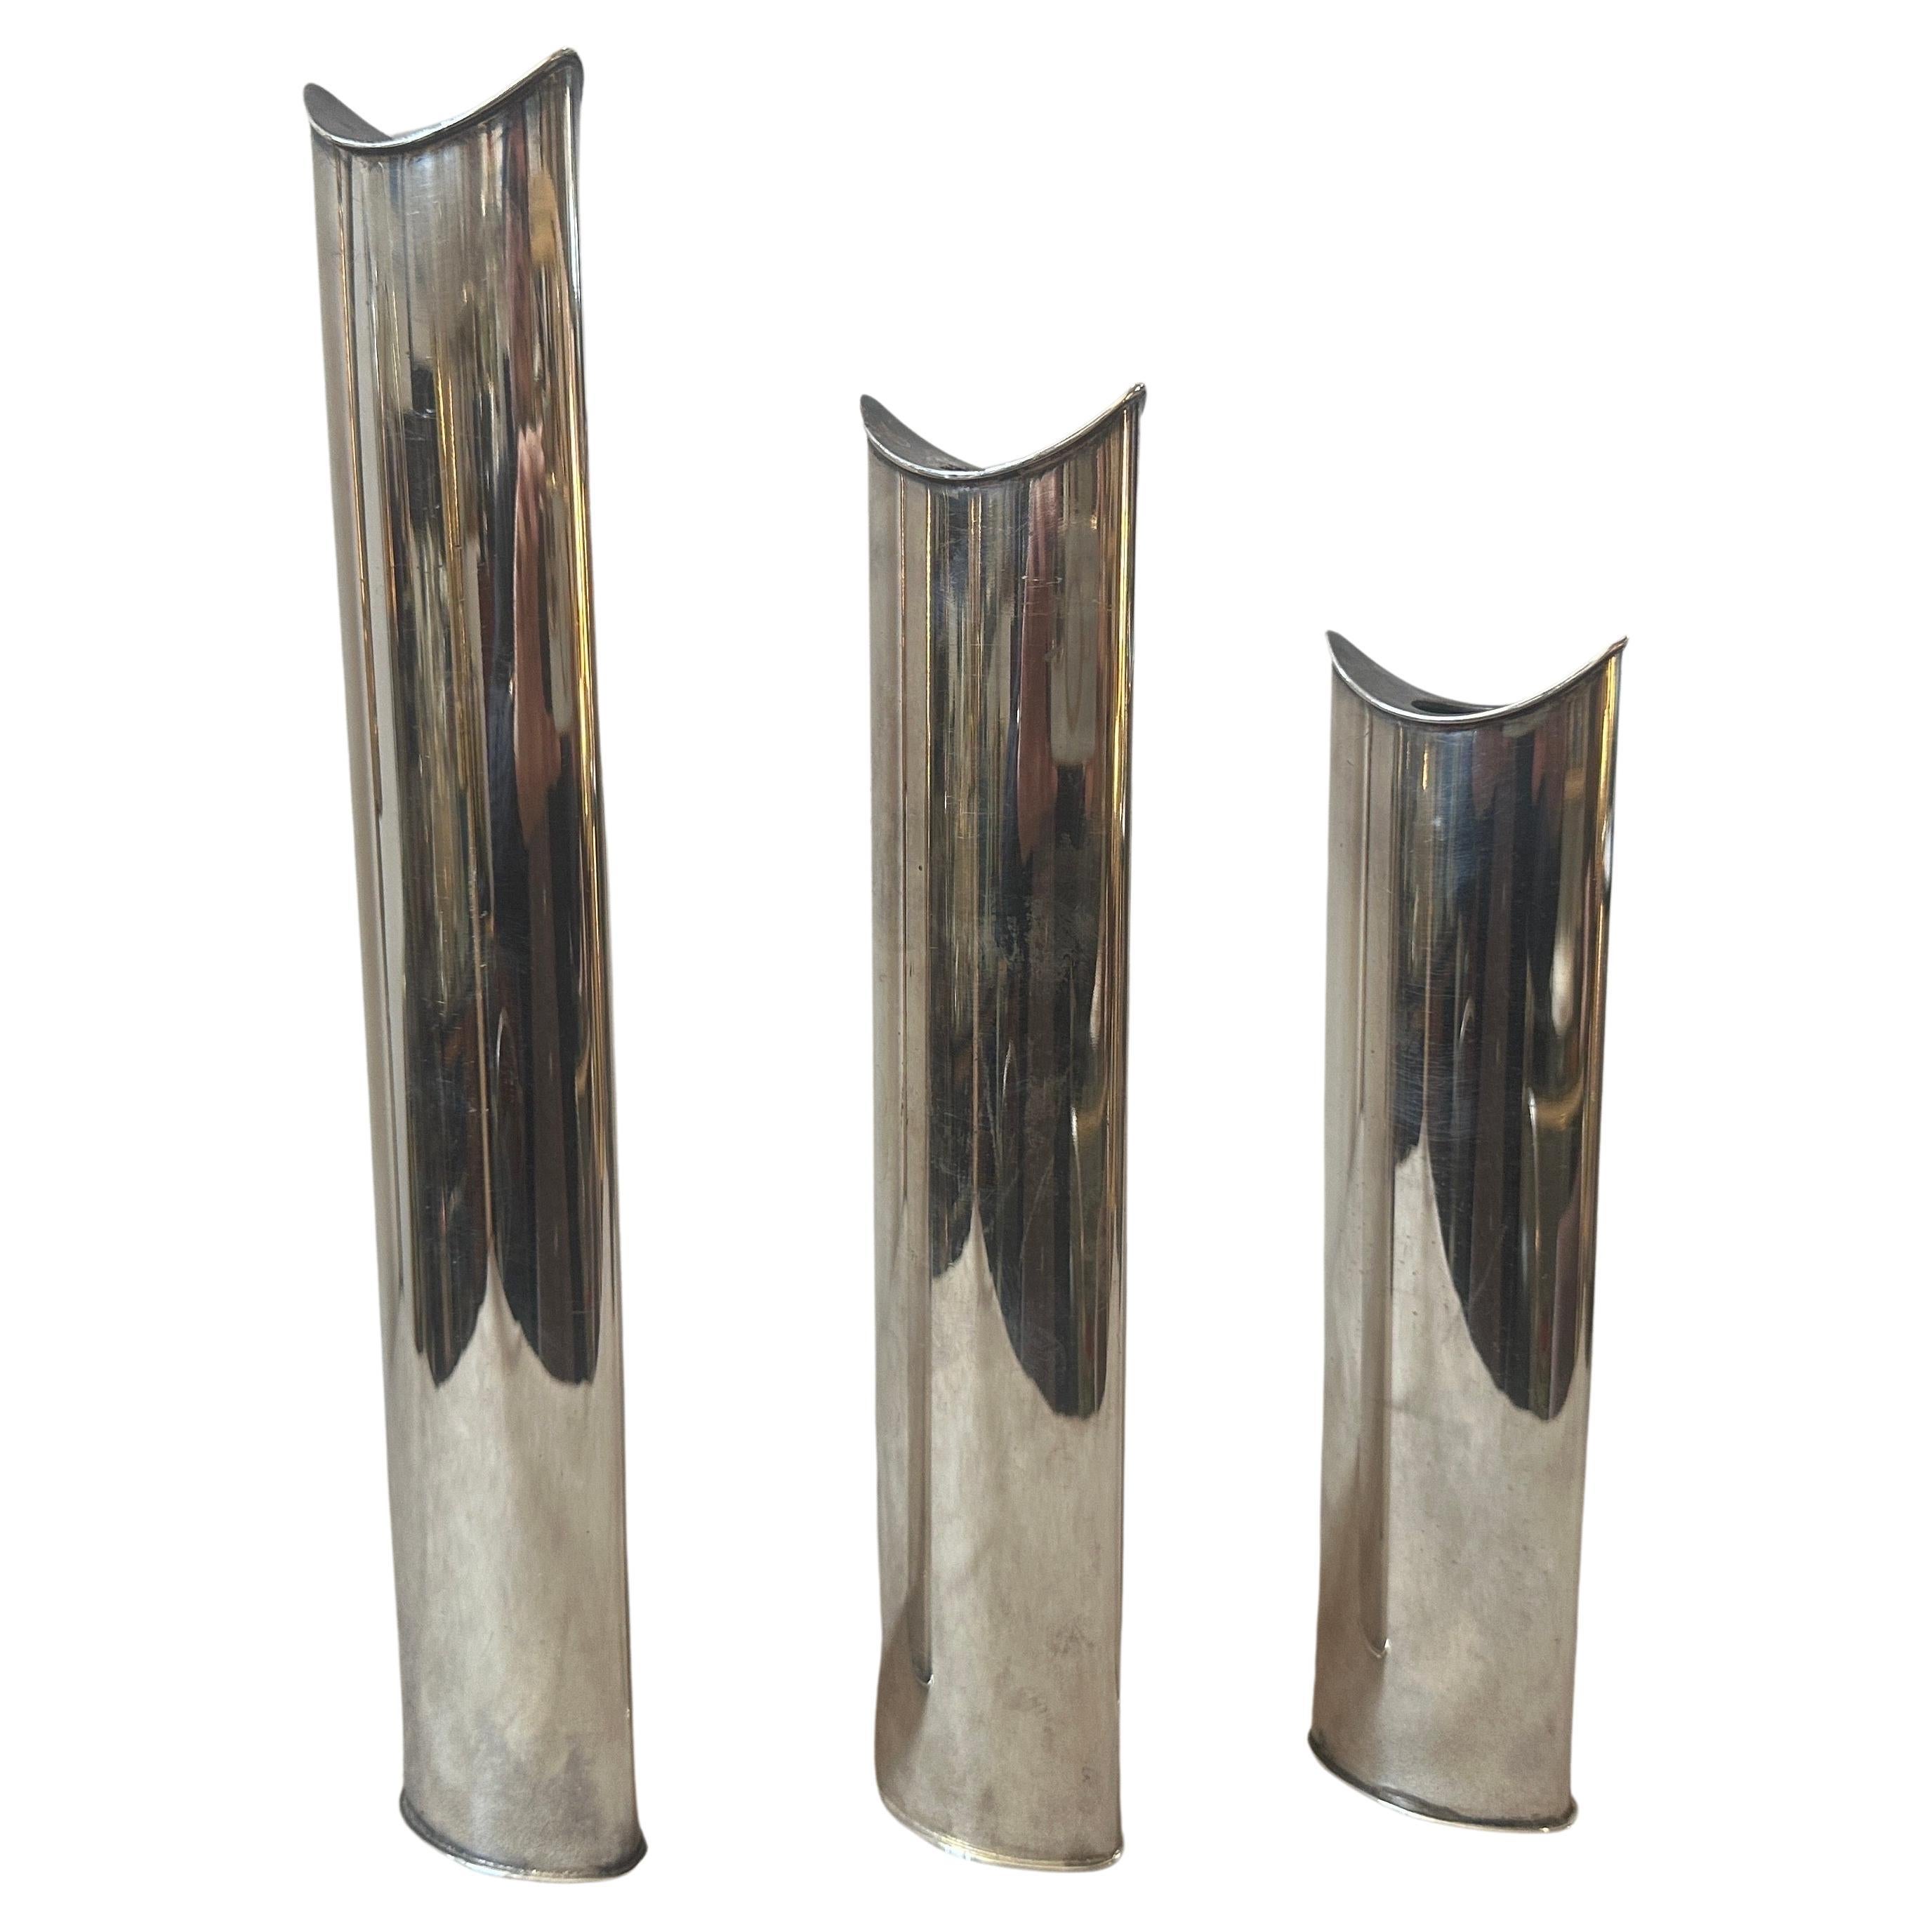 Trois emblématiques vases Giselle en métal argenté, également utilisables comme chandeliers, conçus par Lino Sabattini et produits par Sabattini Argenteria. Les hauteurs des deux autres vases sont de 26 cm et 21 cm. Ils sont en parfait état. Lino